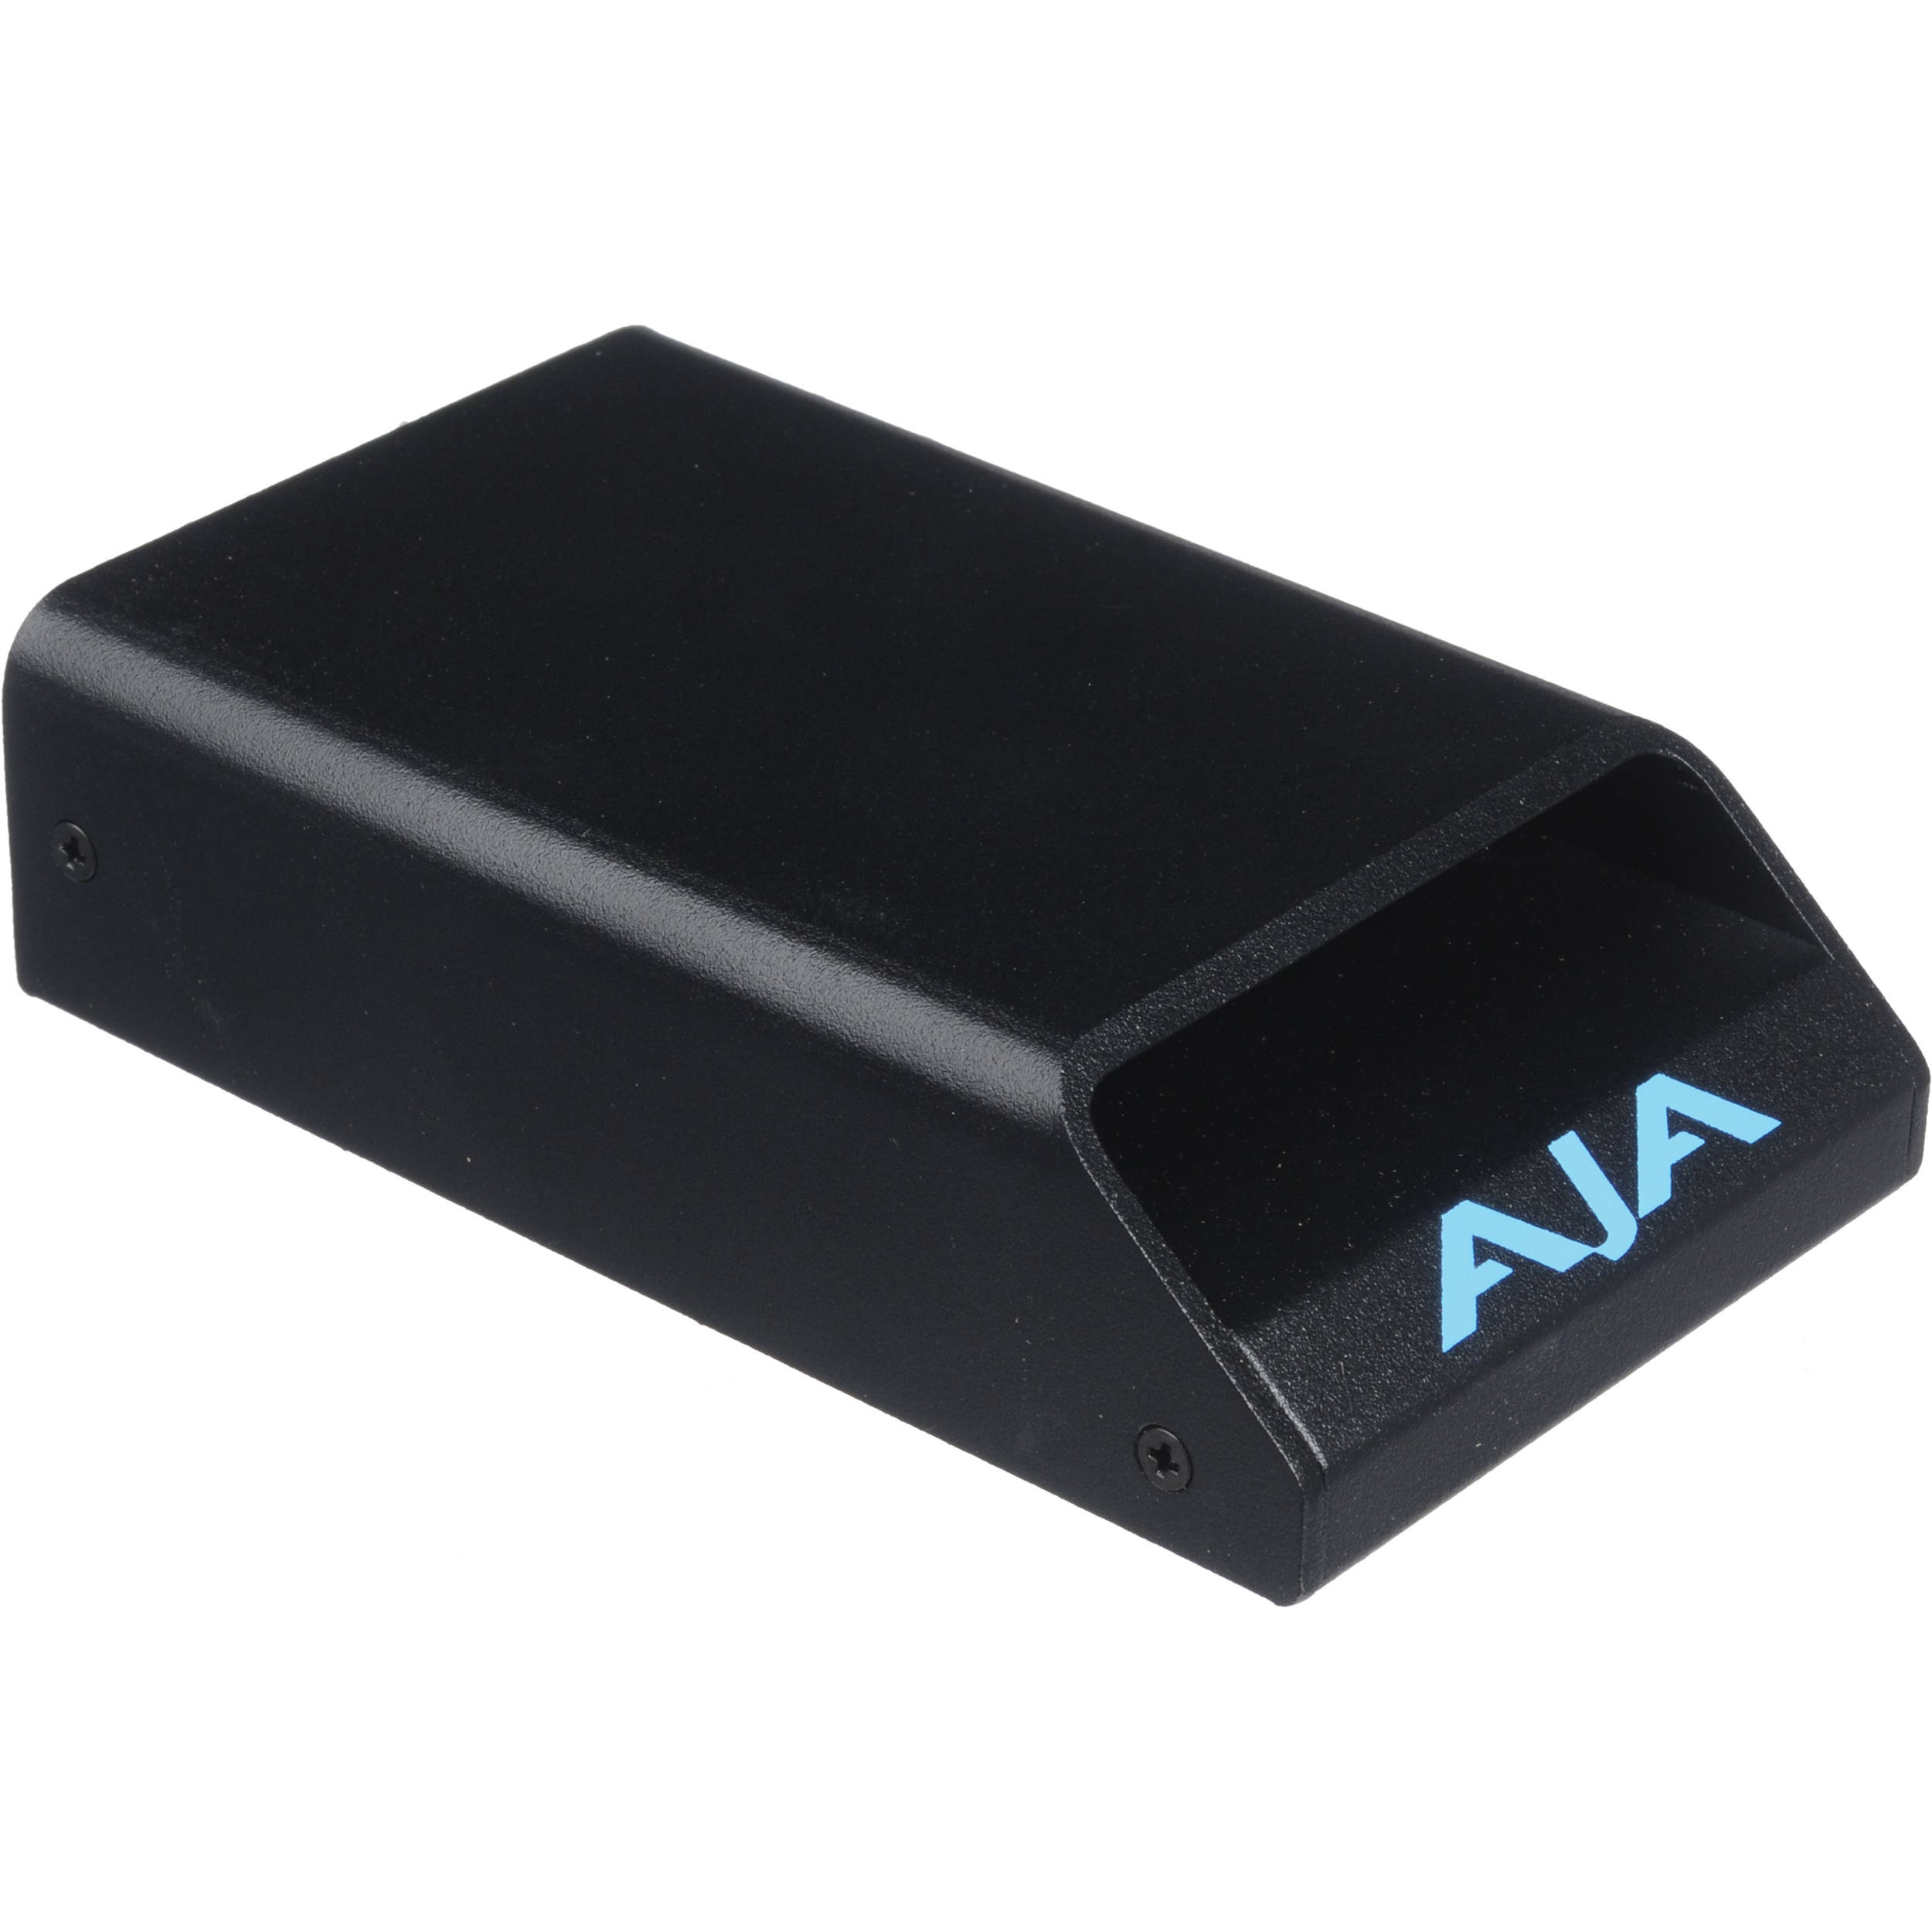 AJA Pak Dock for Ki Pro Quad Pak SSDs